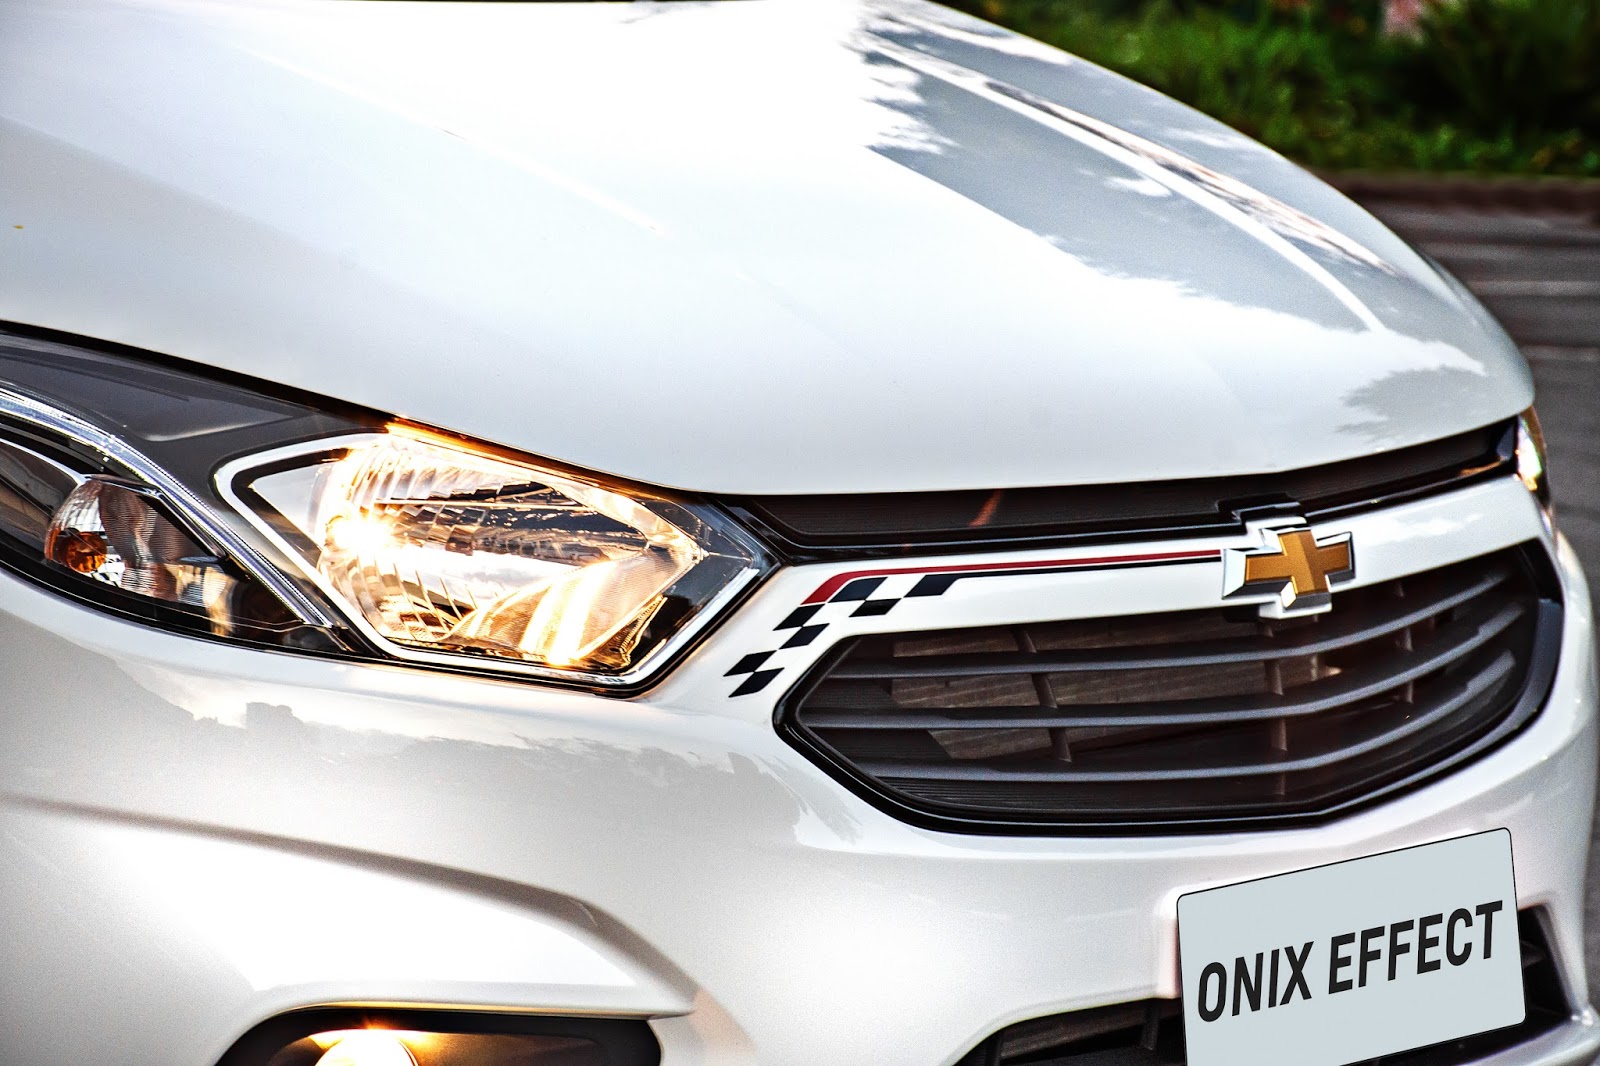 Novo Effect marca estreia da linha 2018 do Chevrolet Onix